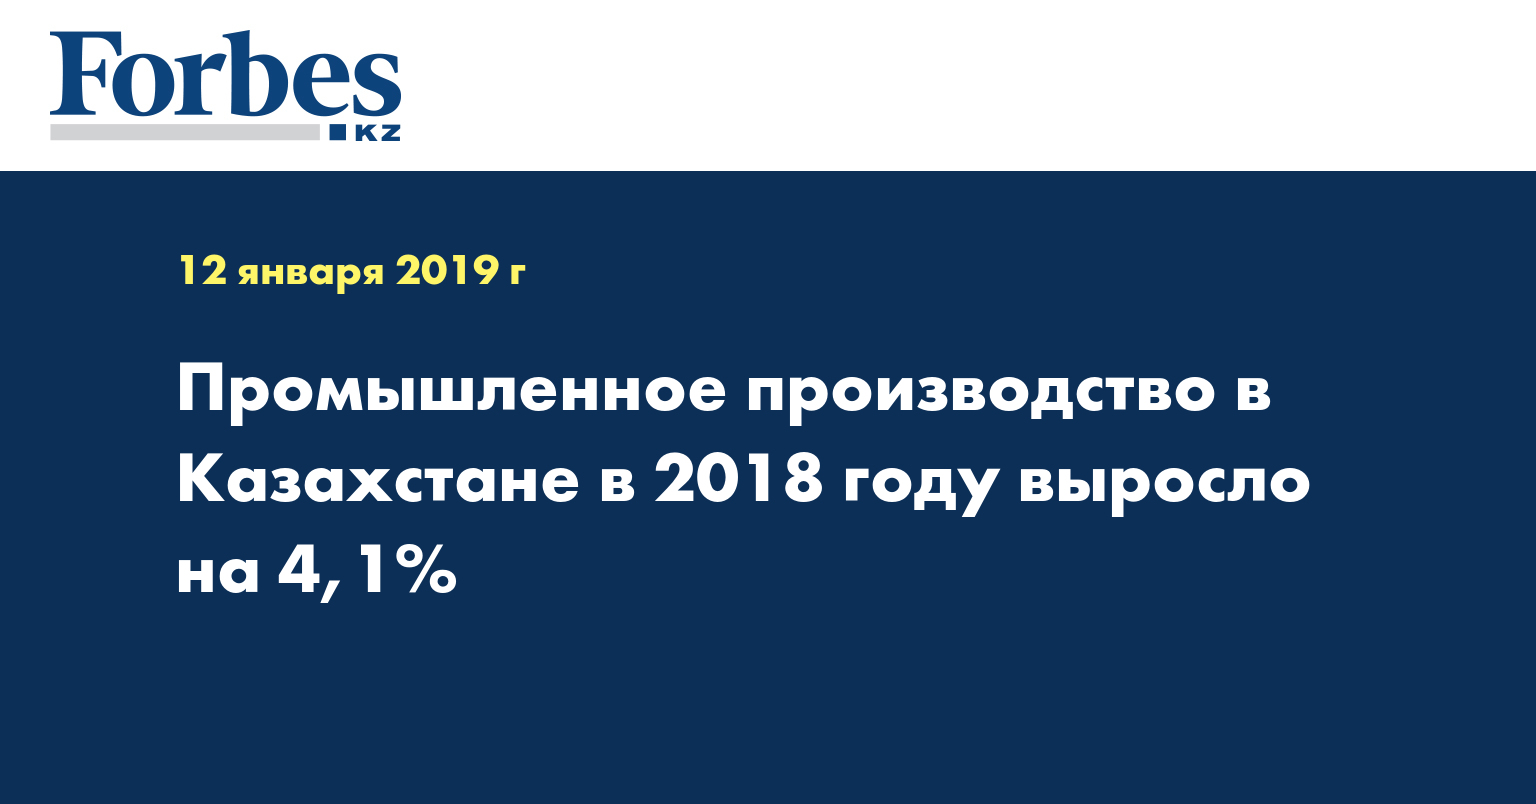 Промышленное производство в Казахстане в 2018 году выросло на 4,1%  